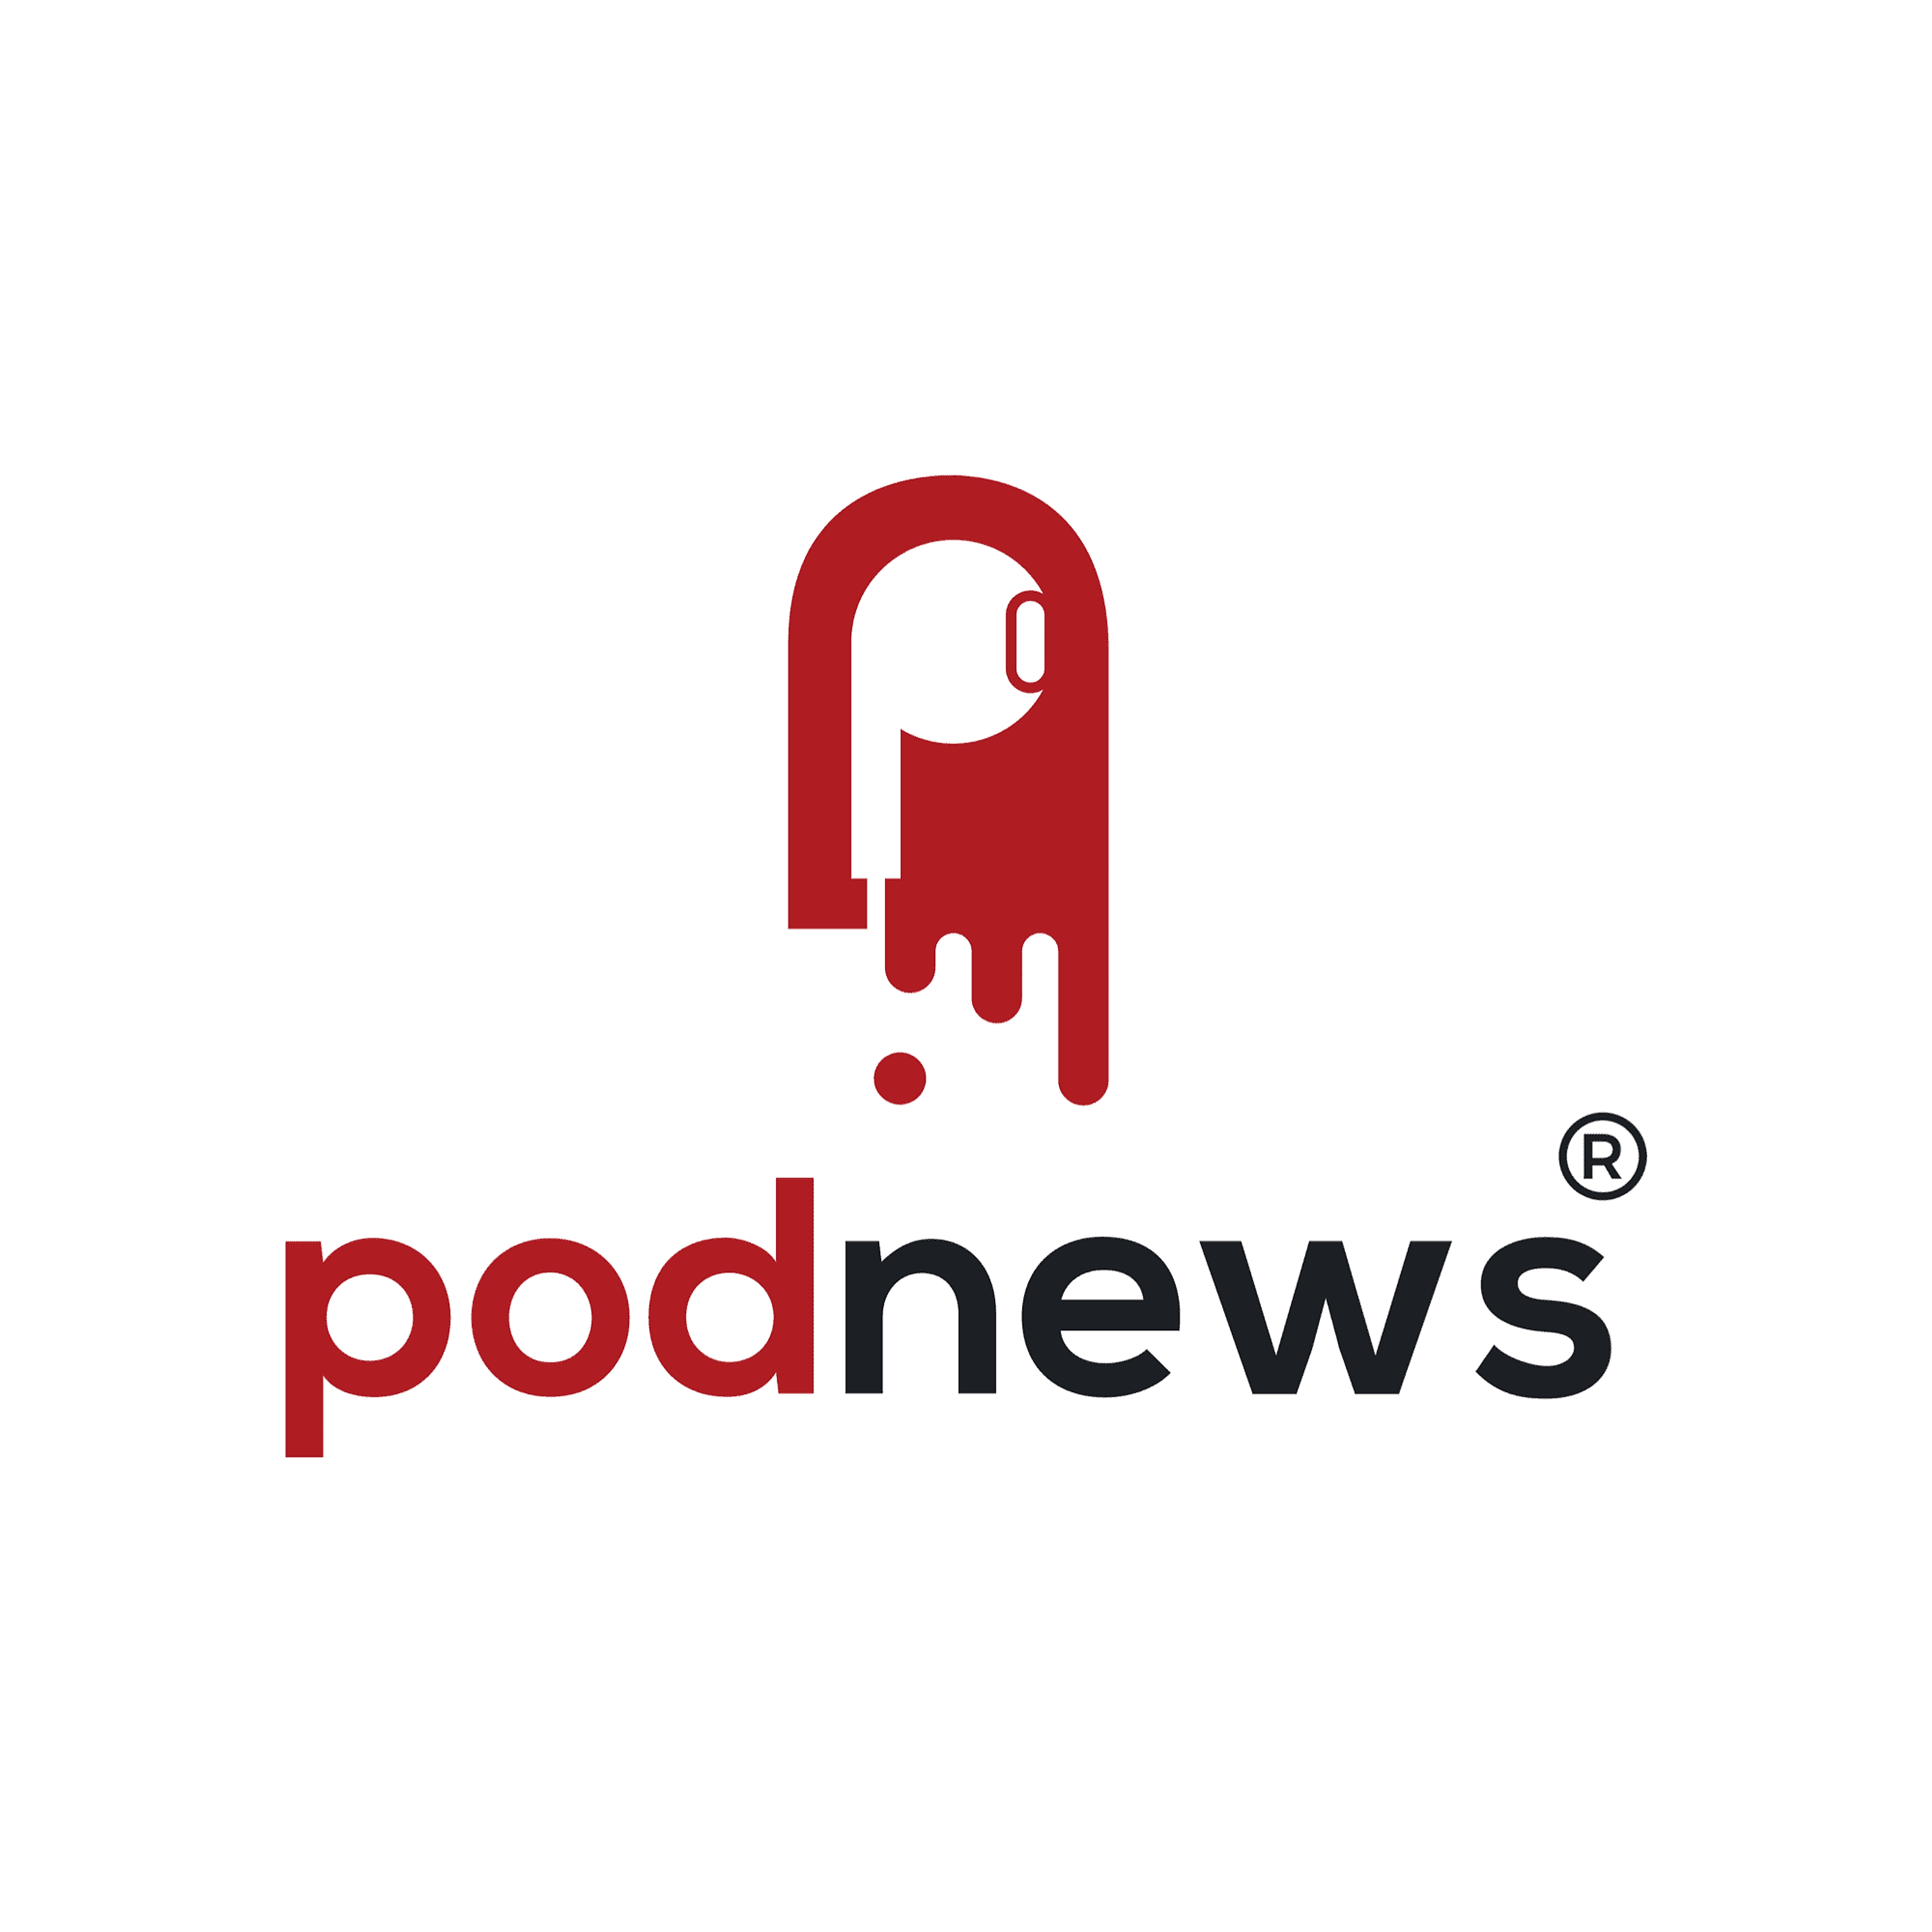 Podnews podcasting news cover image